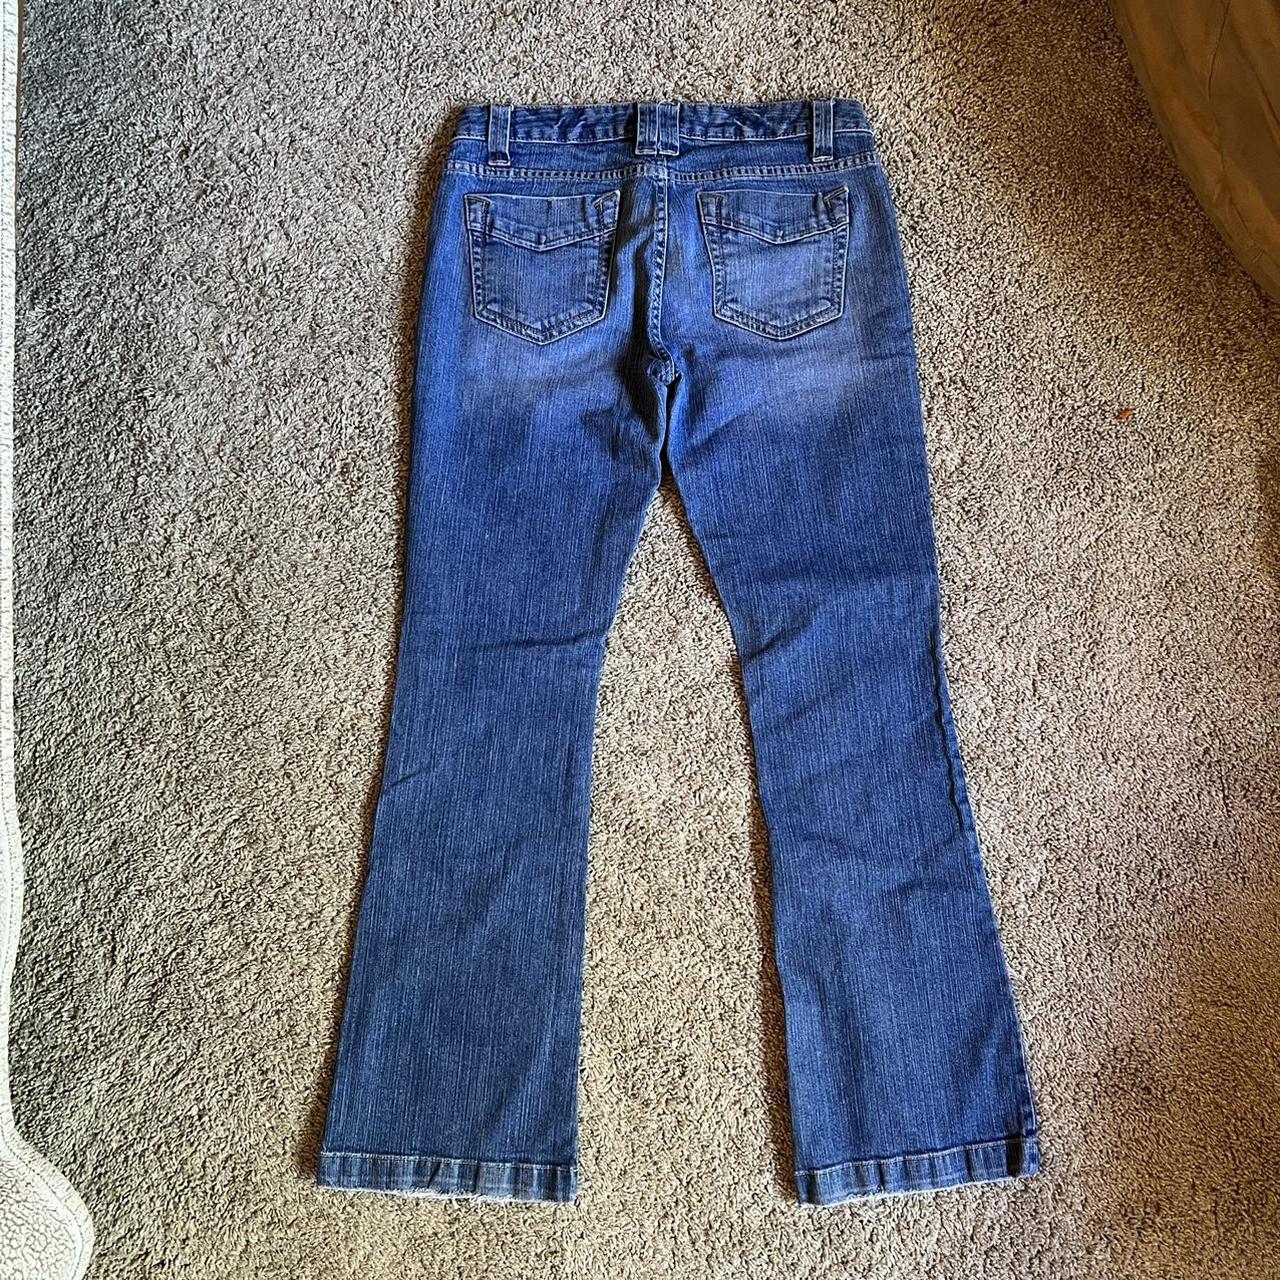 Aeropostale low waisted jeans Cute zipper pocket... - Depop